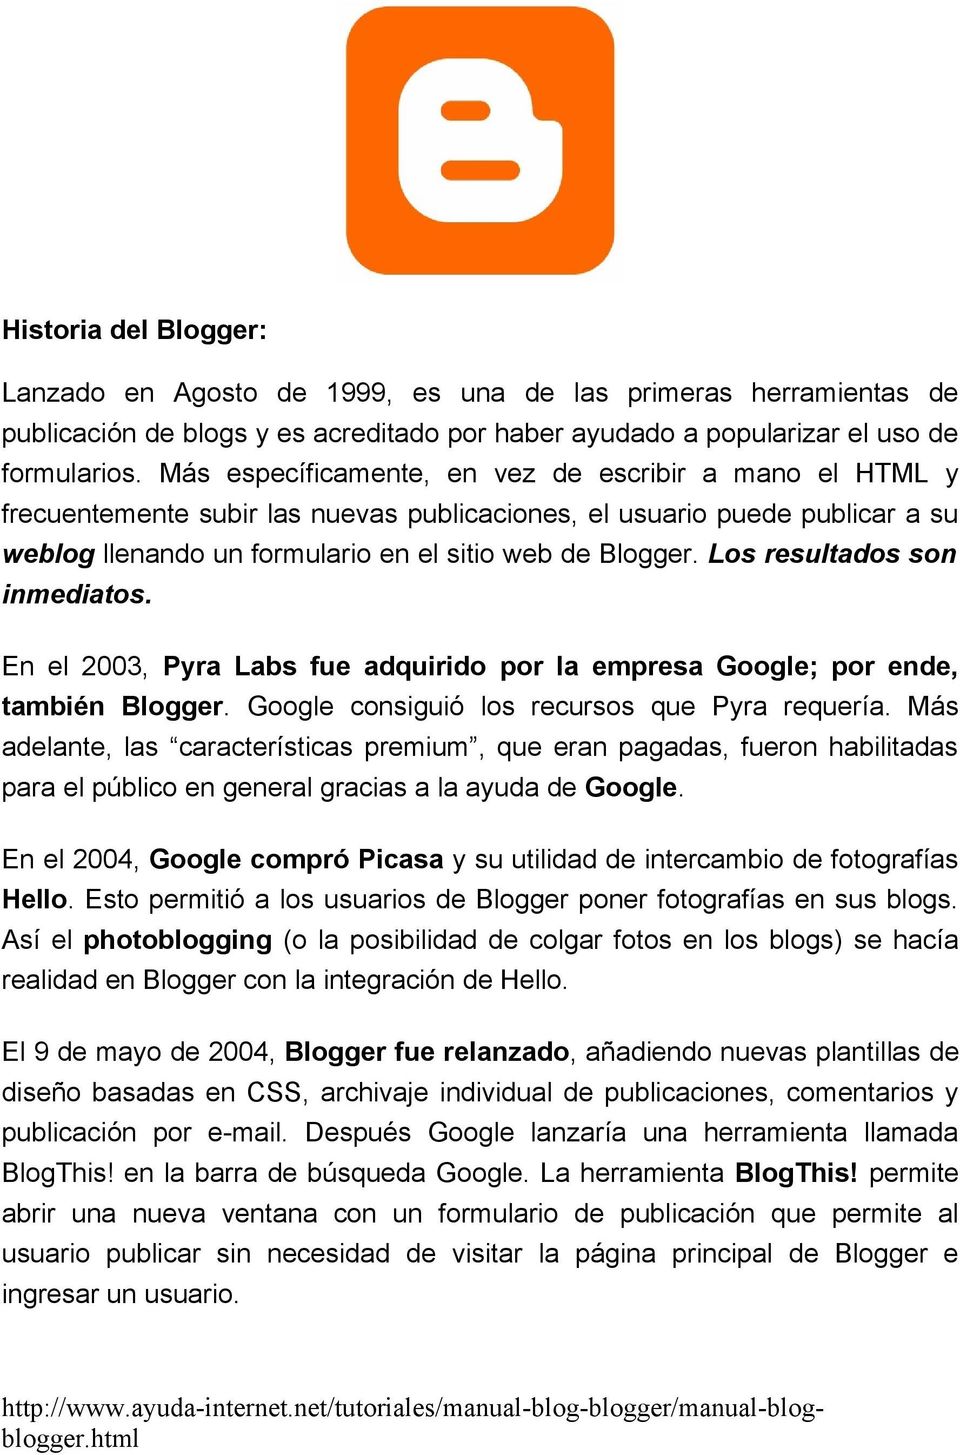 Los resultados son inmediatos. En el 2003, Pyra Labs fue adquirido por la empresa Google; por ende, también Blogger. Google consiguió los recursos que Pyra requería.